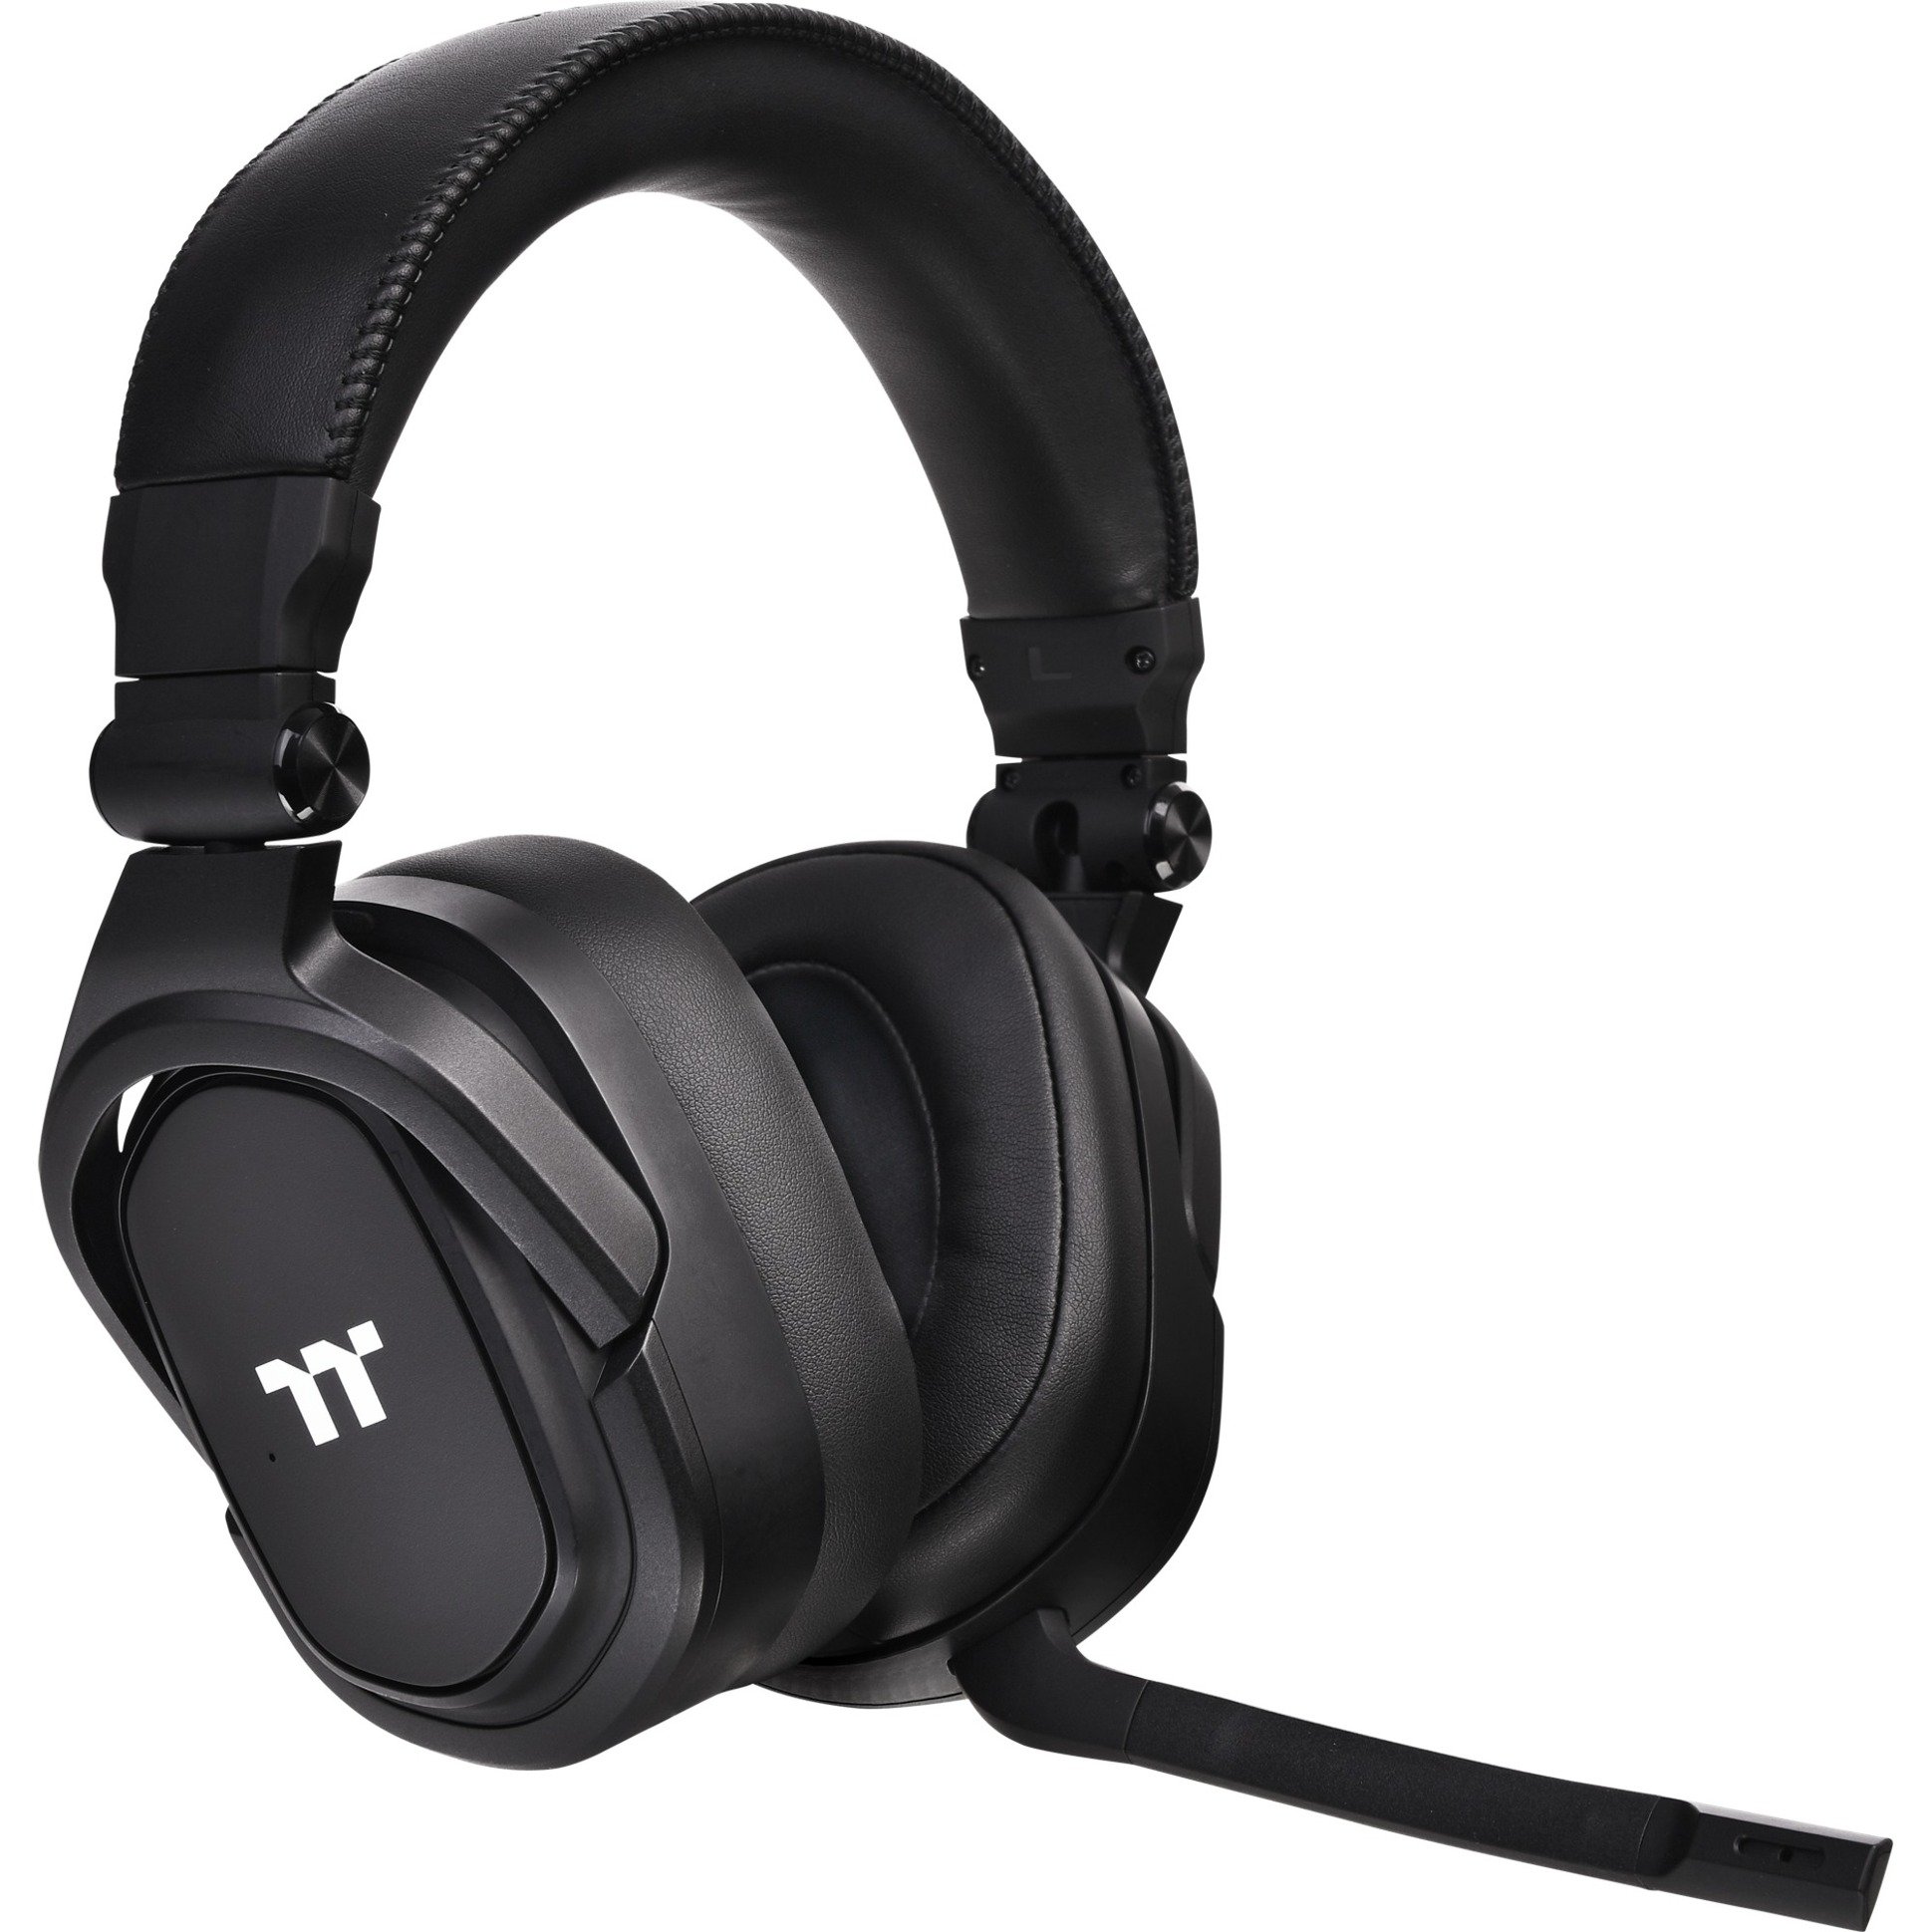 Image of Alternate - Argent H5, Gaming-Headset online einkaufen bei Alternate